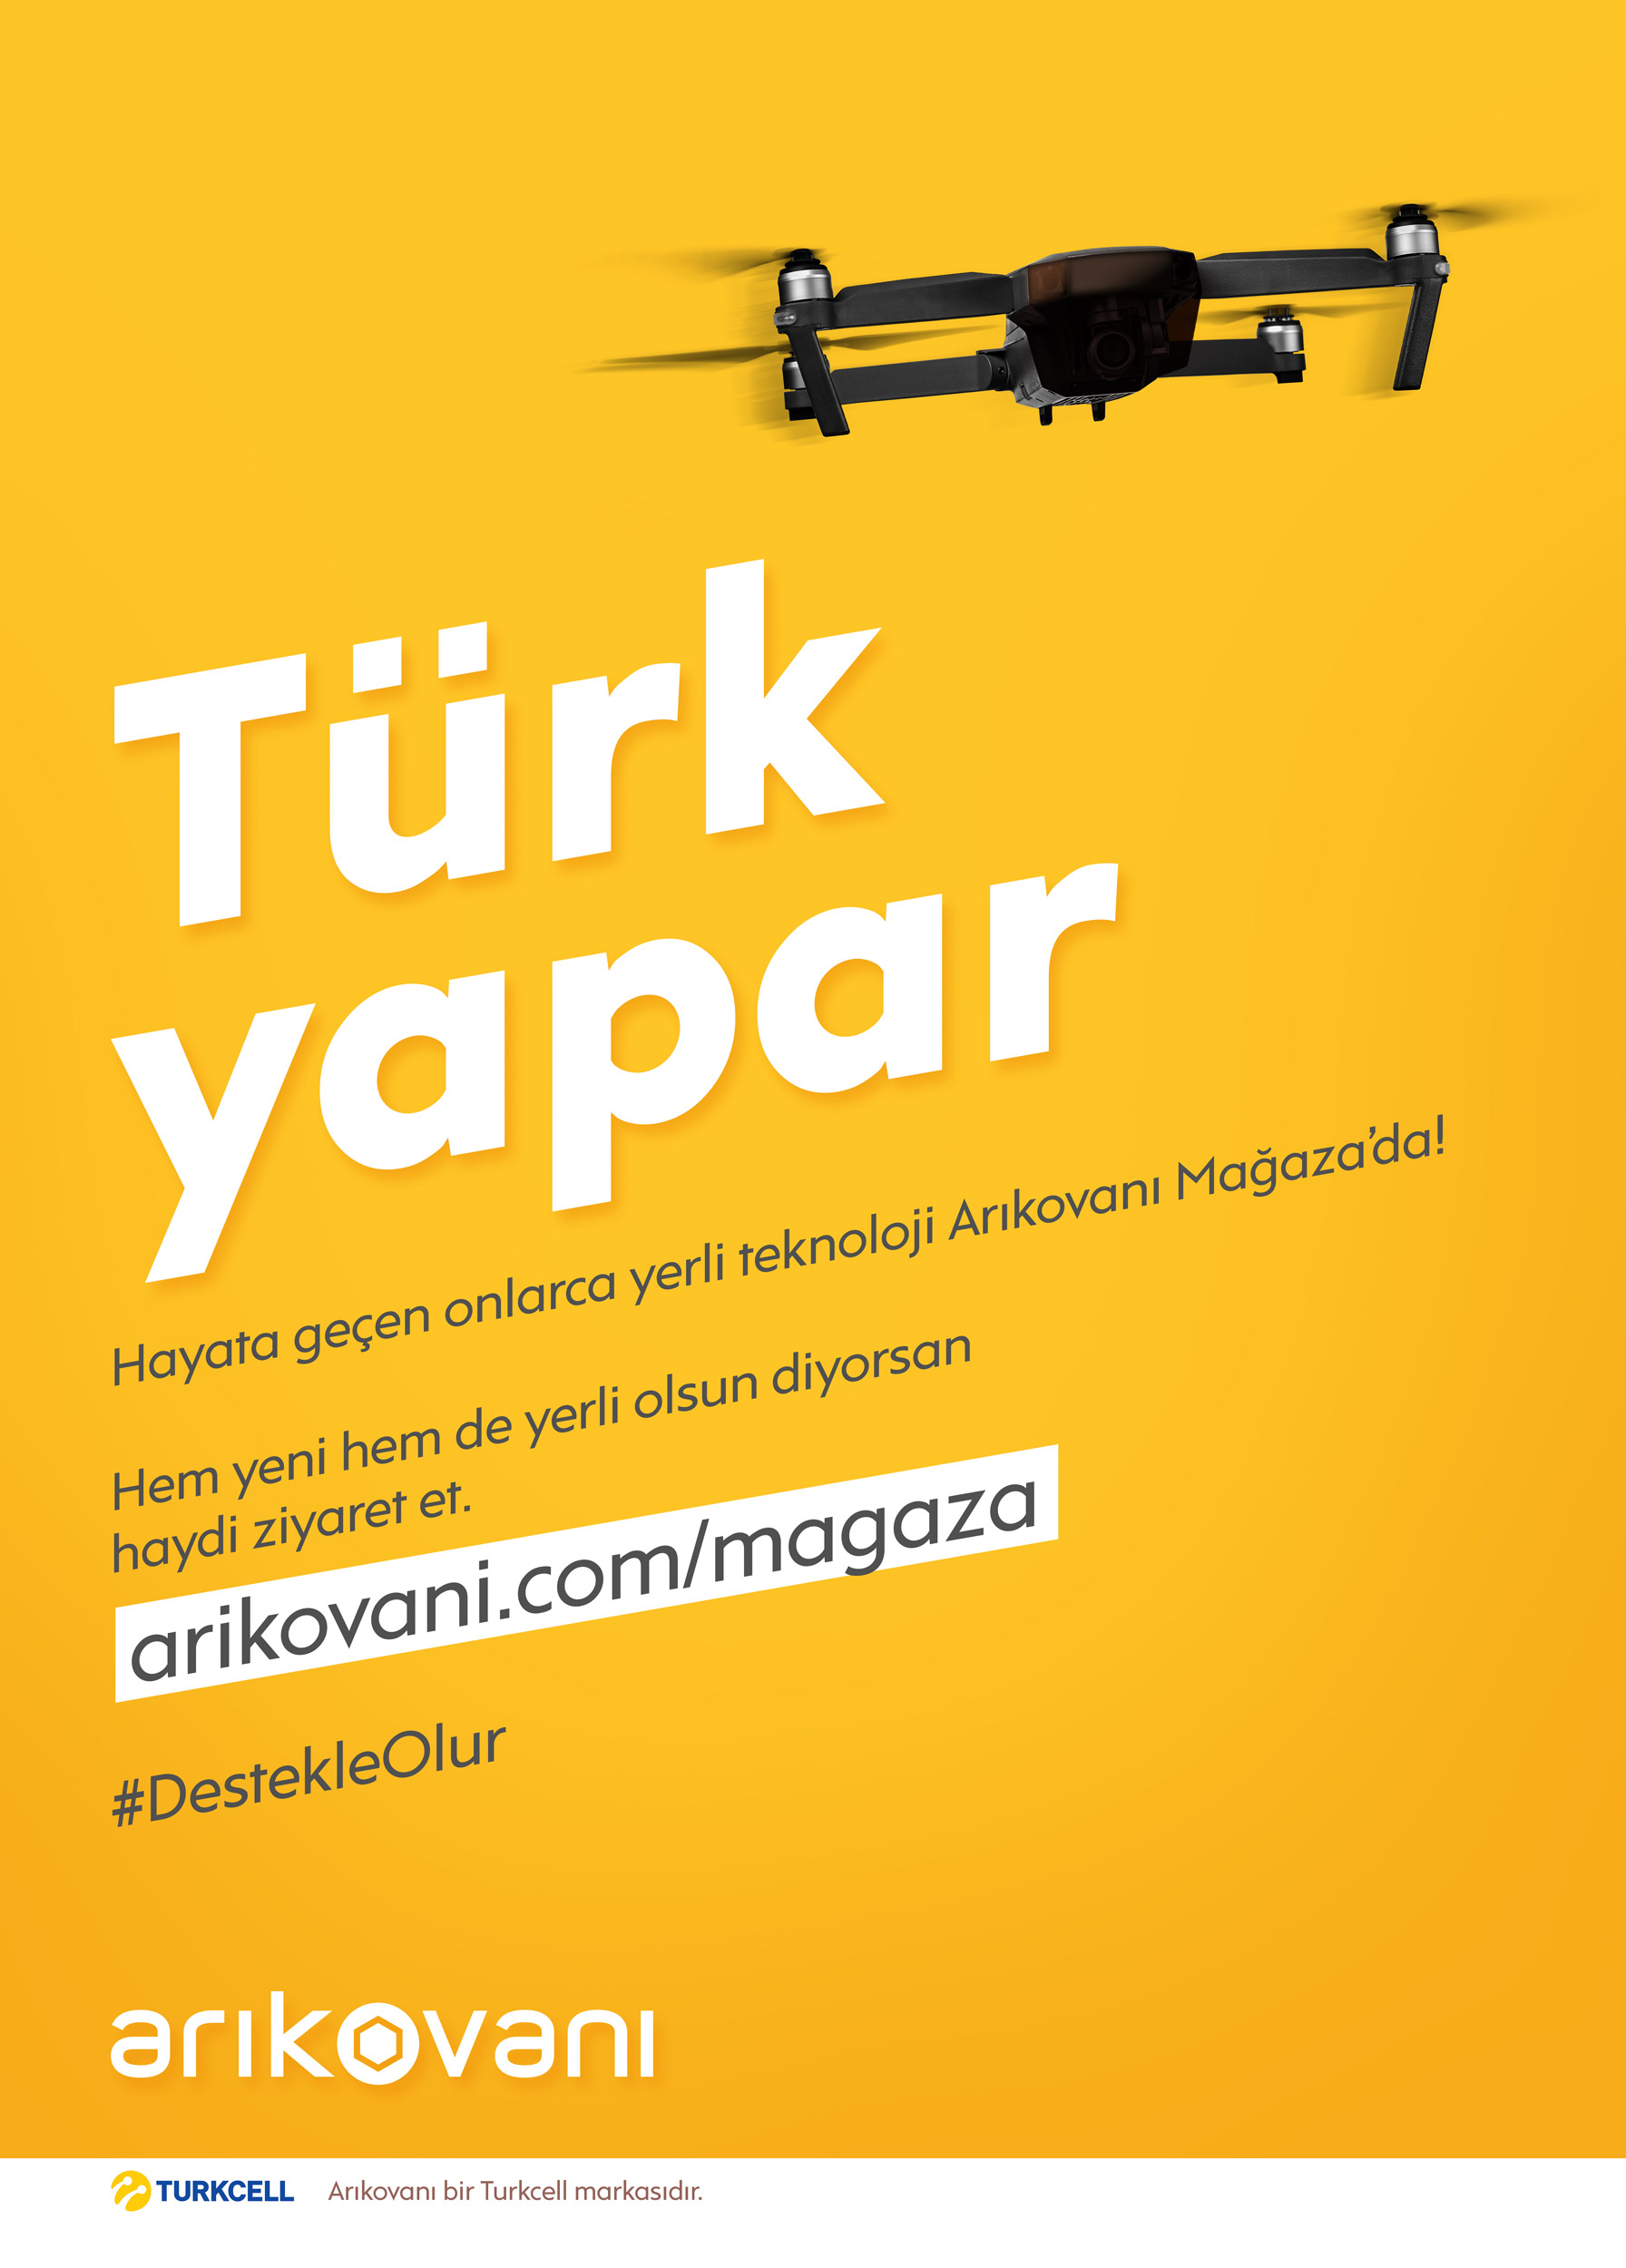 turkcell-arıkovanı-reklamı-türkiyenin-reklamları-reklamlar-kitle-fonlama